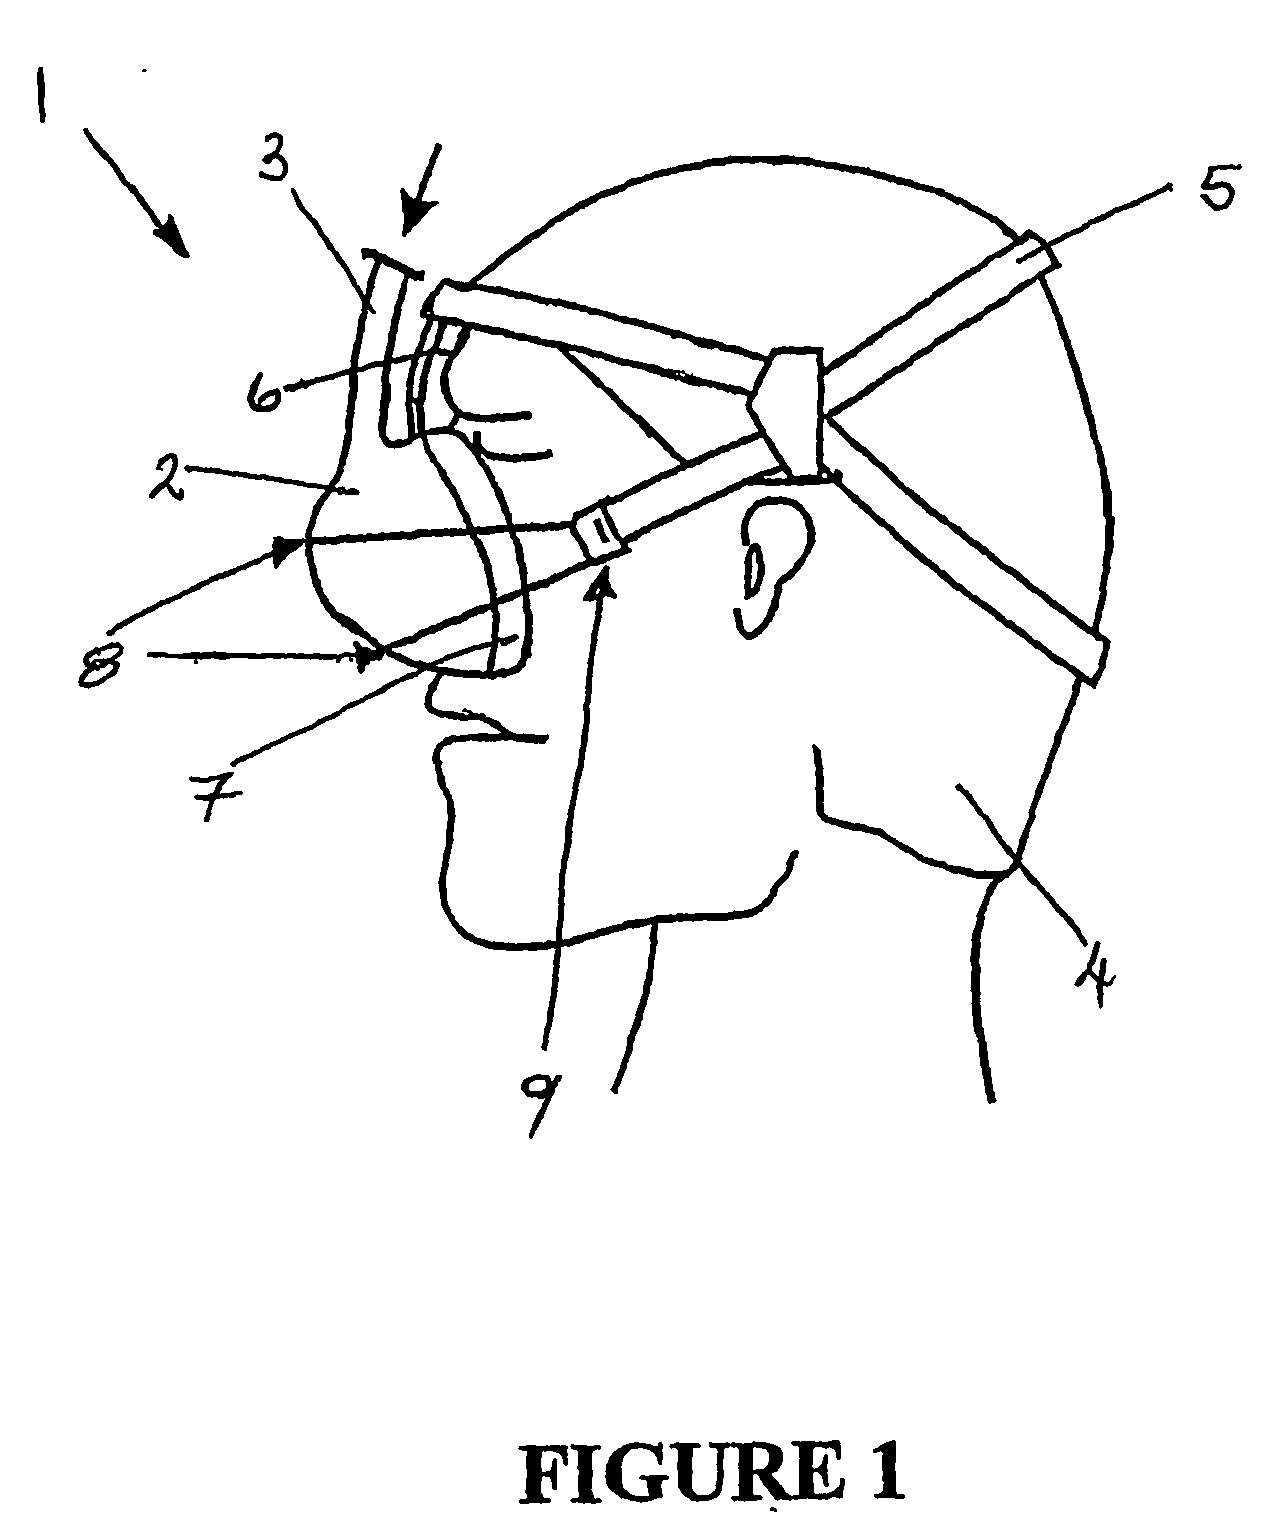 Release mechanism for masks